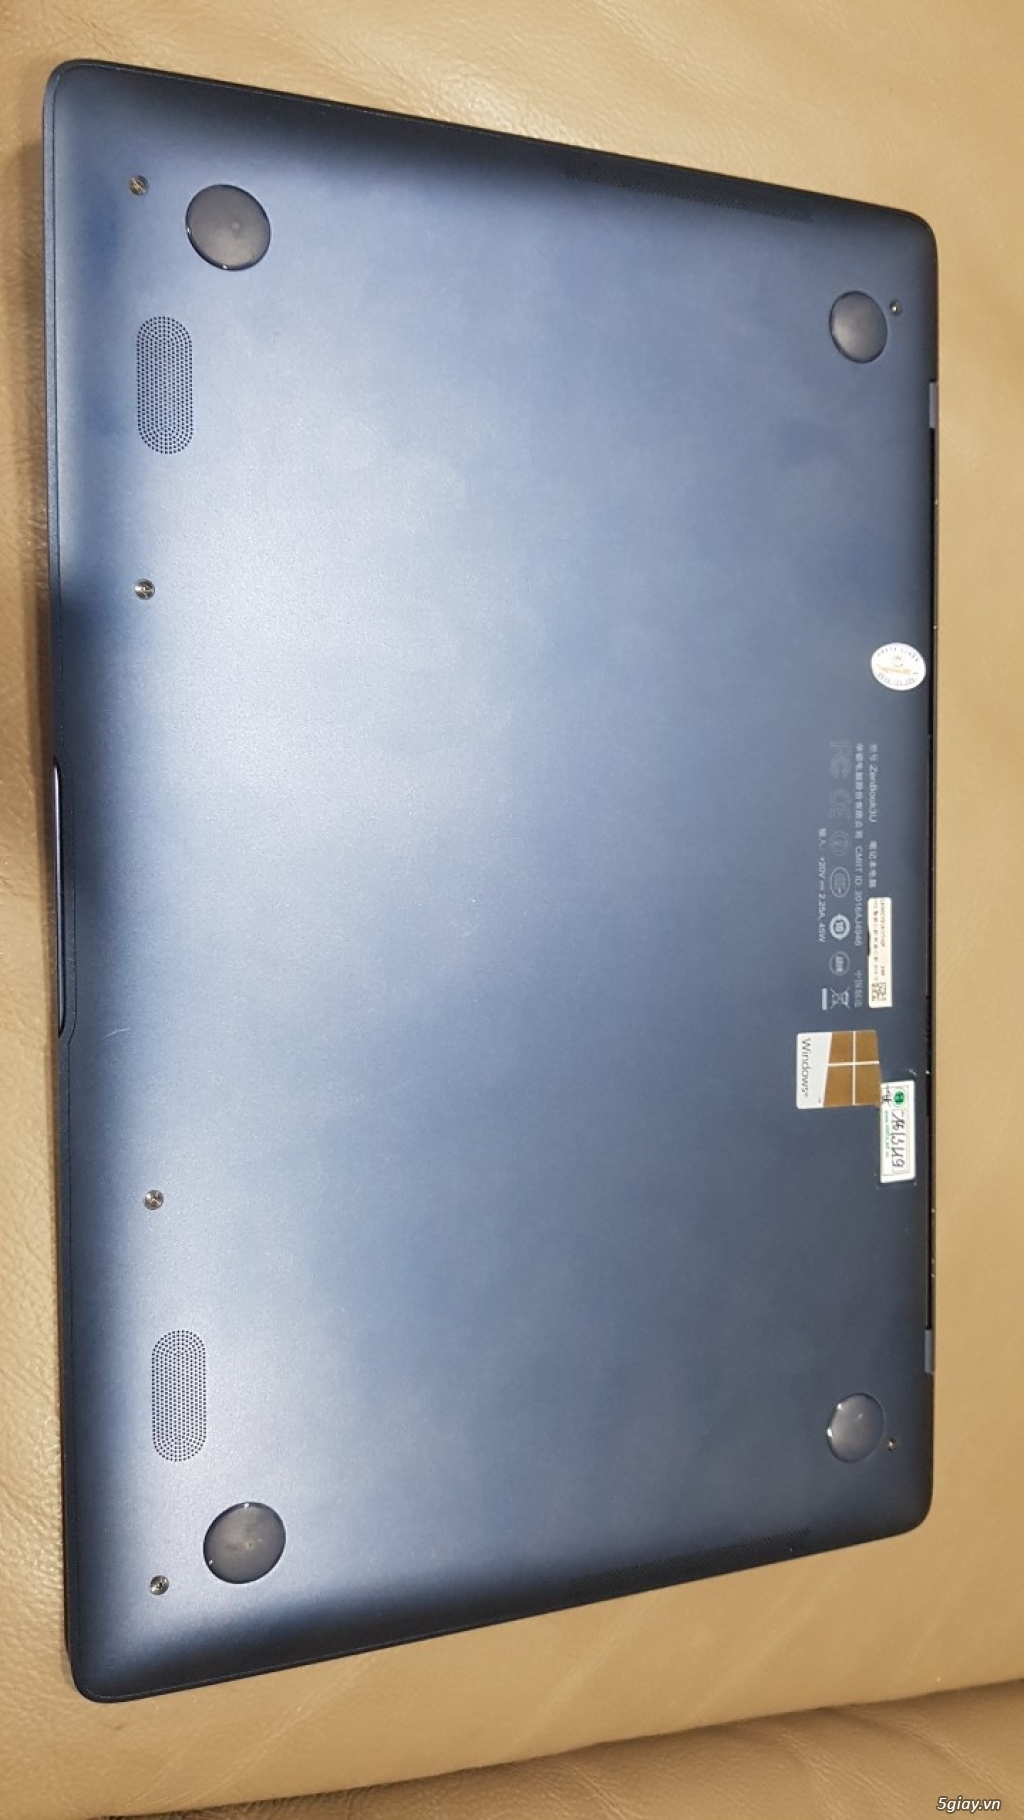 Laptop siêu mỏng Asus zenbook 3 - 12,5 inch, I7, 256G - 1